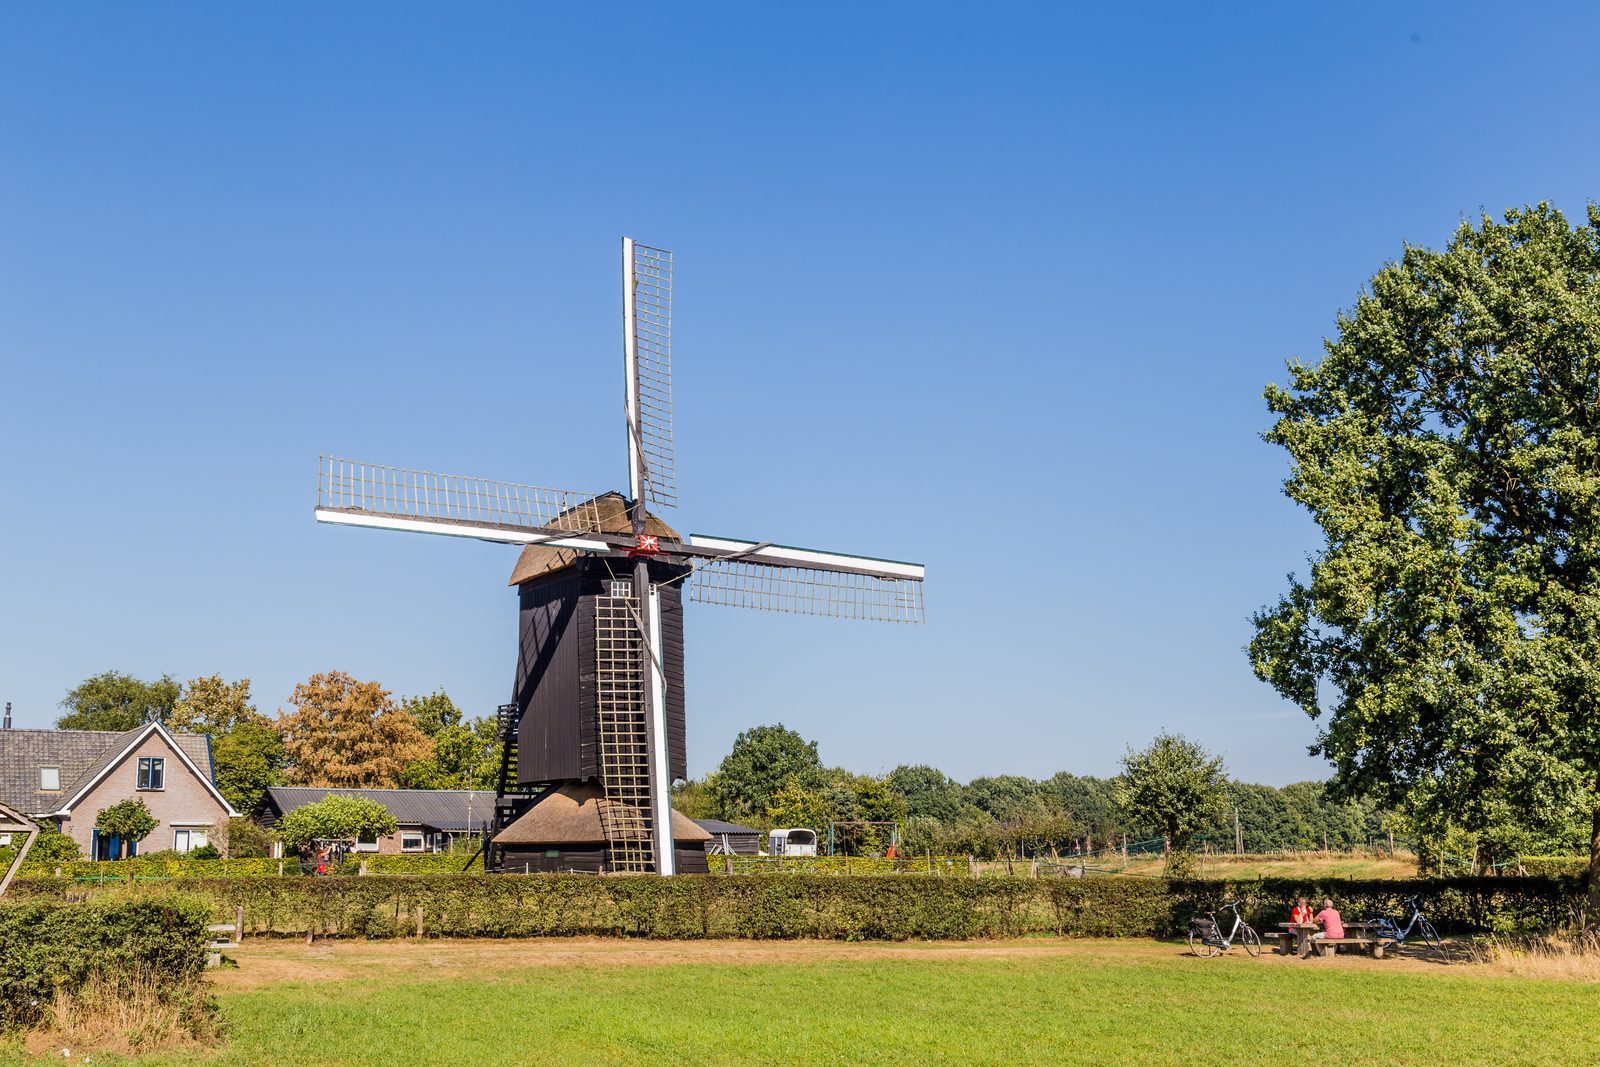   Nederland ook in 2022 populairste vakantiebestemming